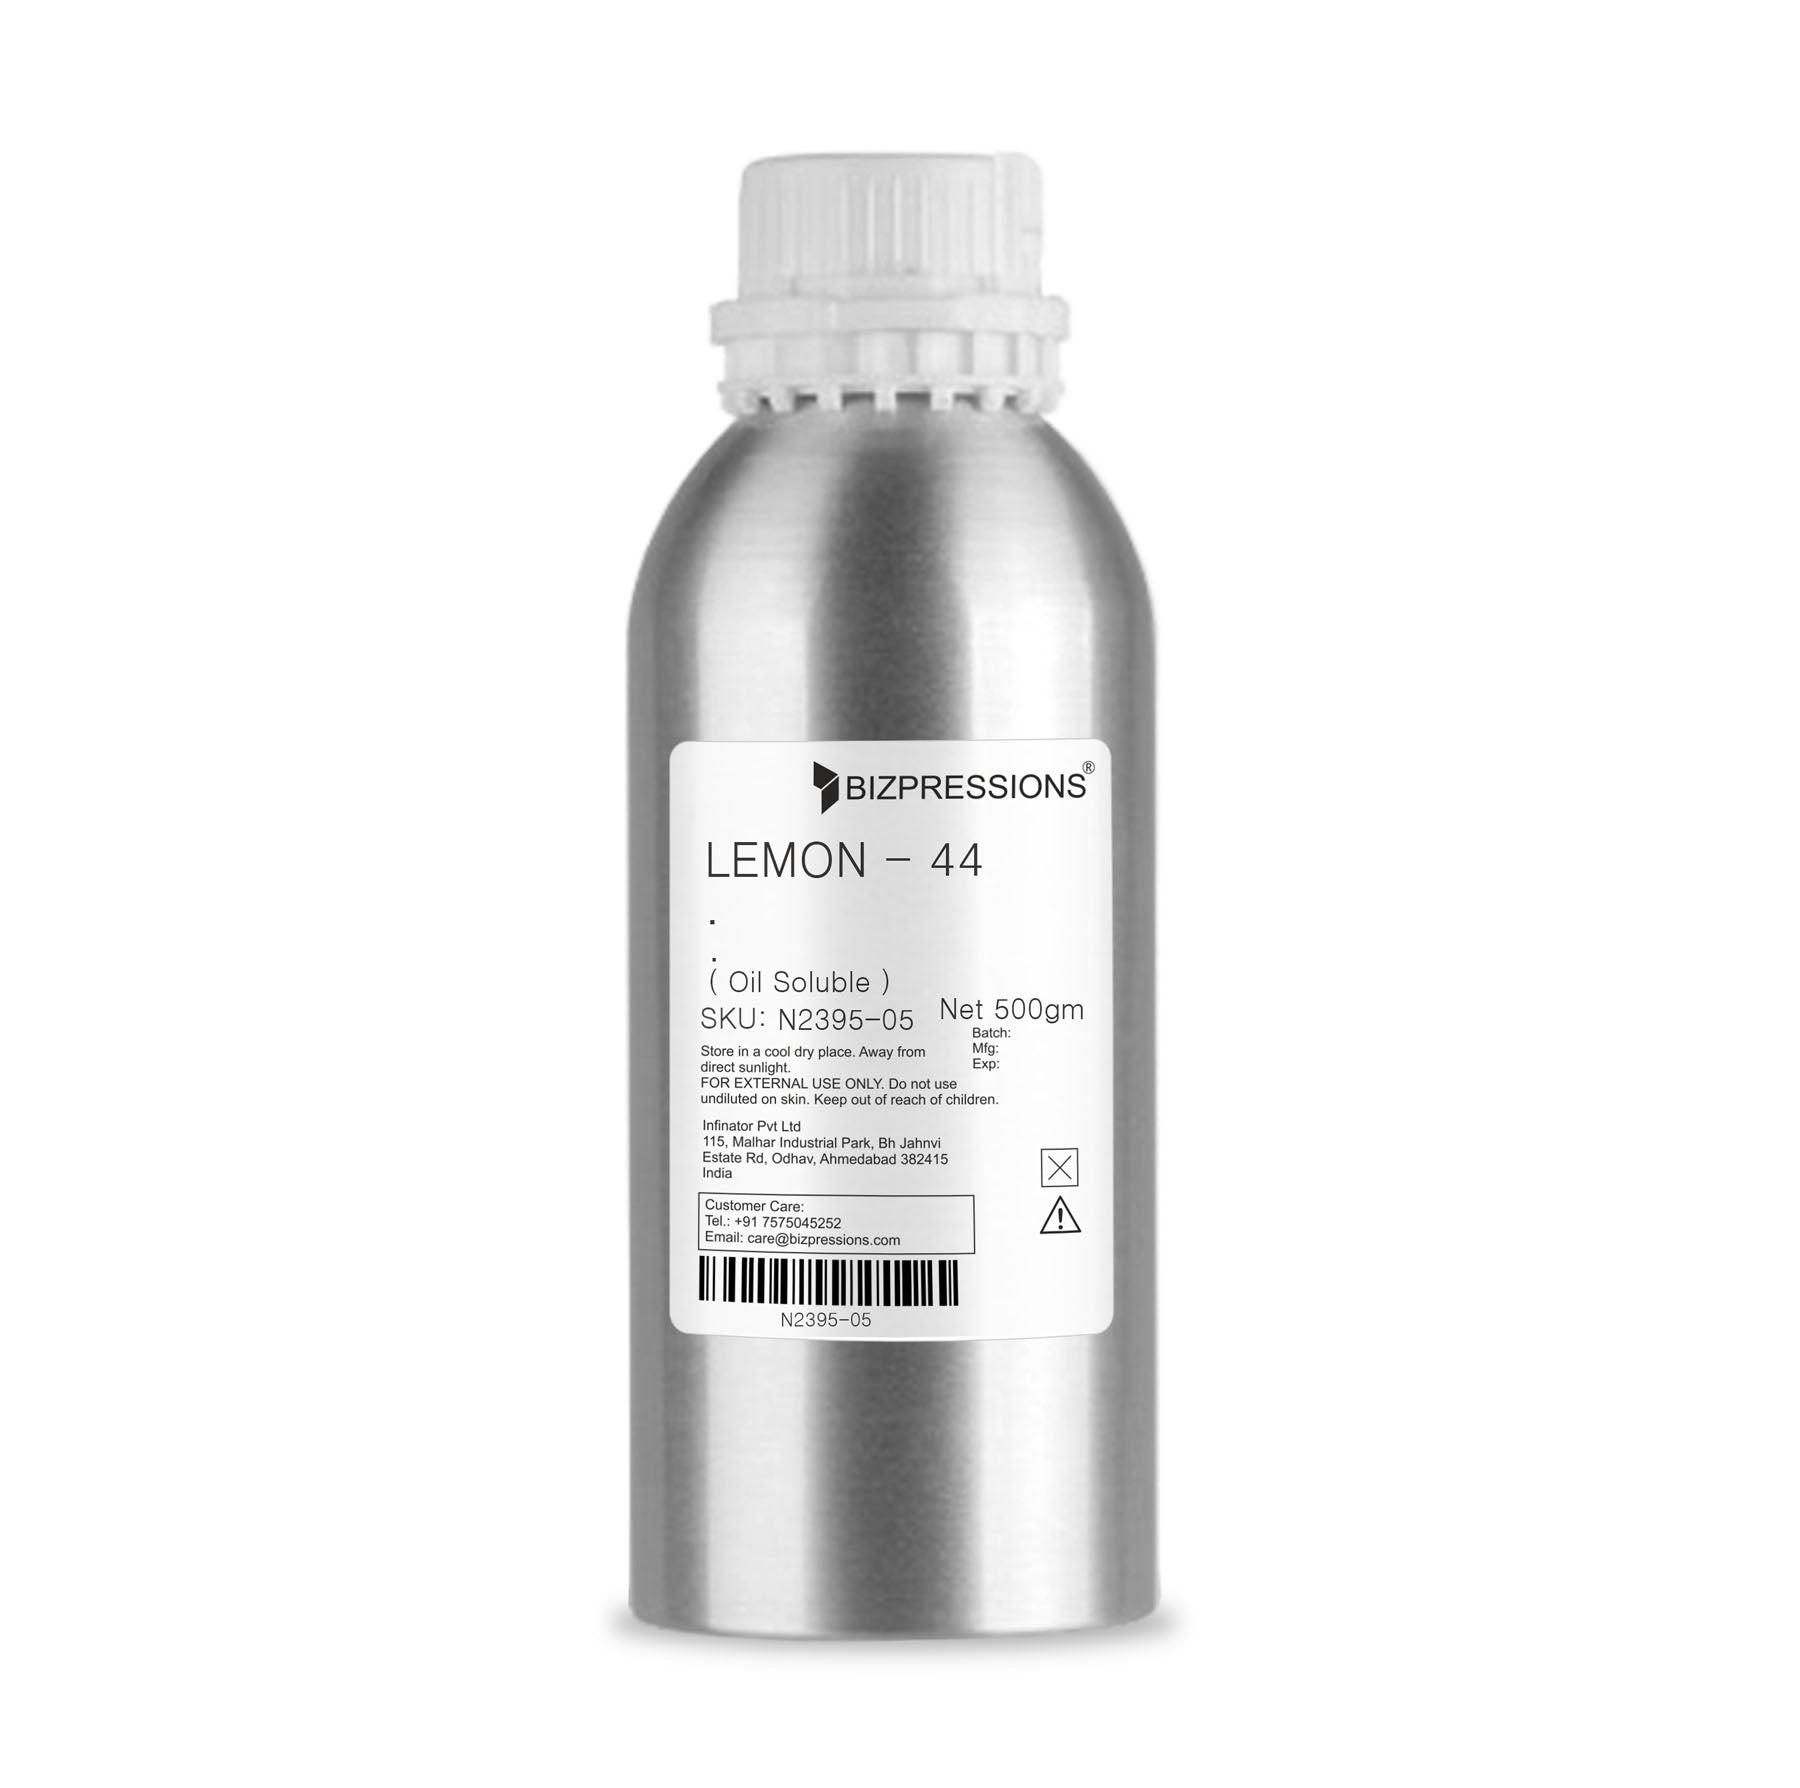 LEMON - 44 - Fragrance ( Oil Soluble ) - 500 gm